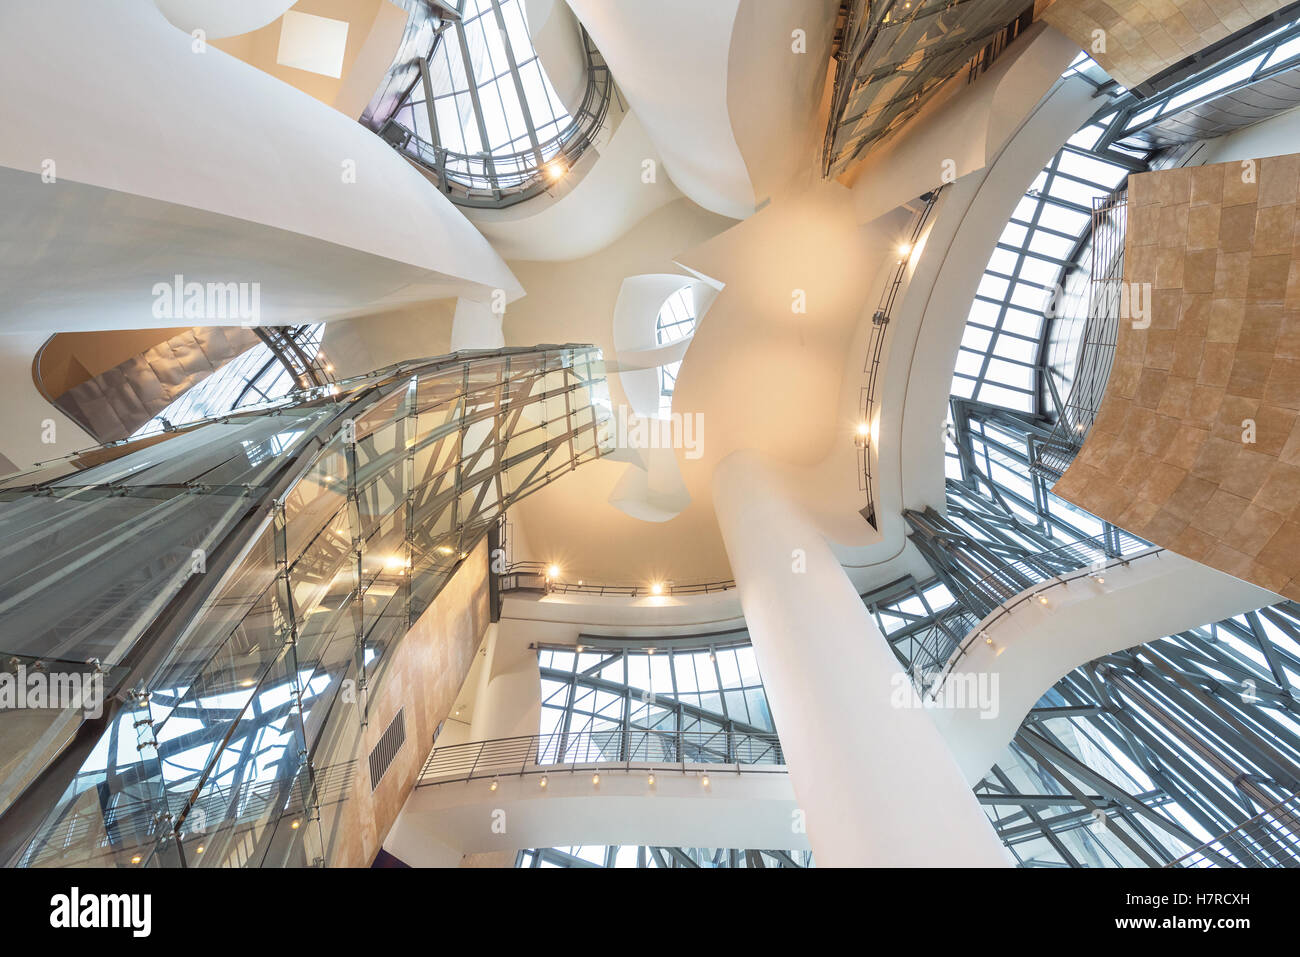 BILBAO, Spagna - 16 ottobre: Interno del Museo Guggenheim il 16 ottobre 2016 a Bilbao, Spagna. è uno dei più importanti mus Foto Stock